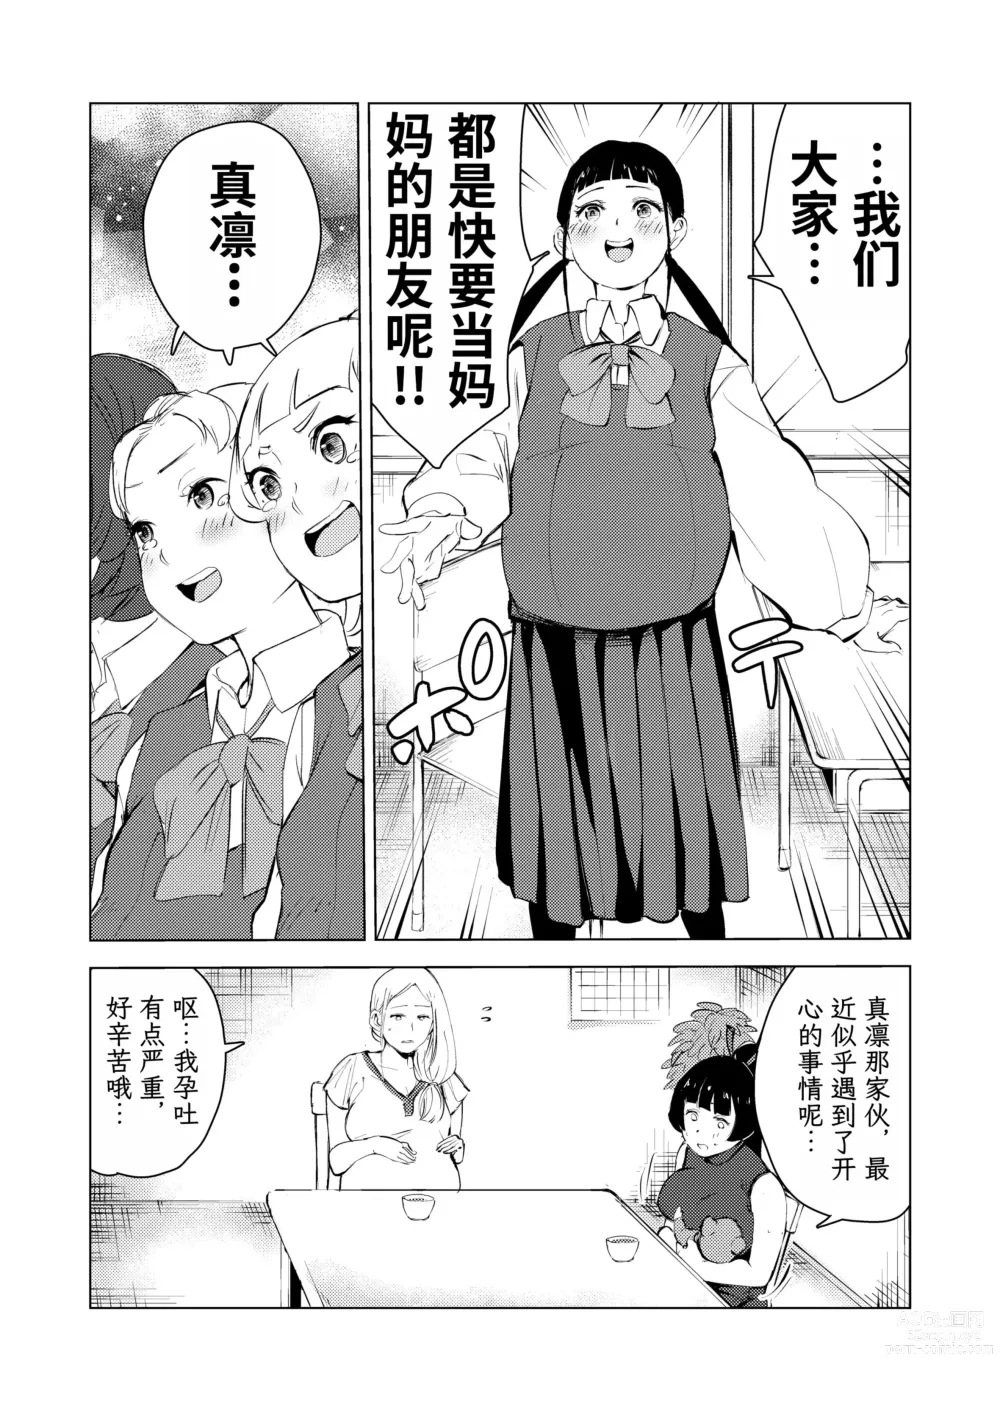 Page 88 of doujinshi 40-sai no Mahoutsukai 3